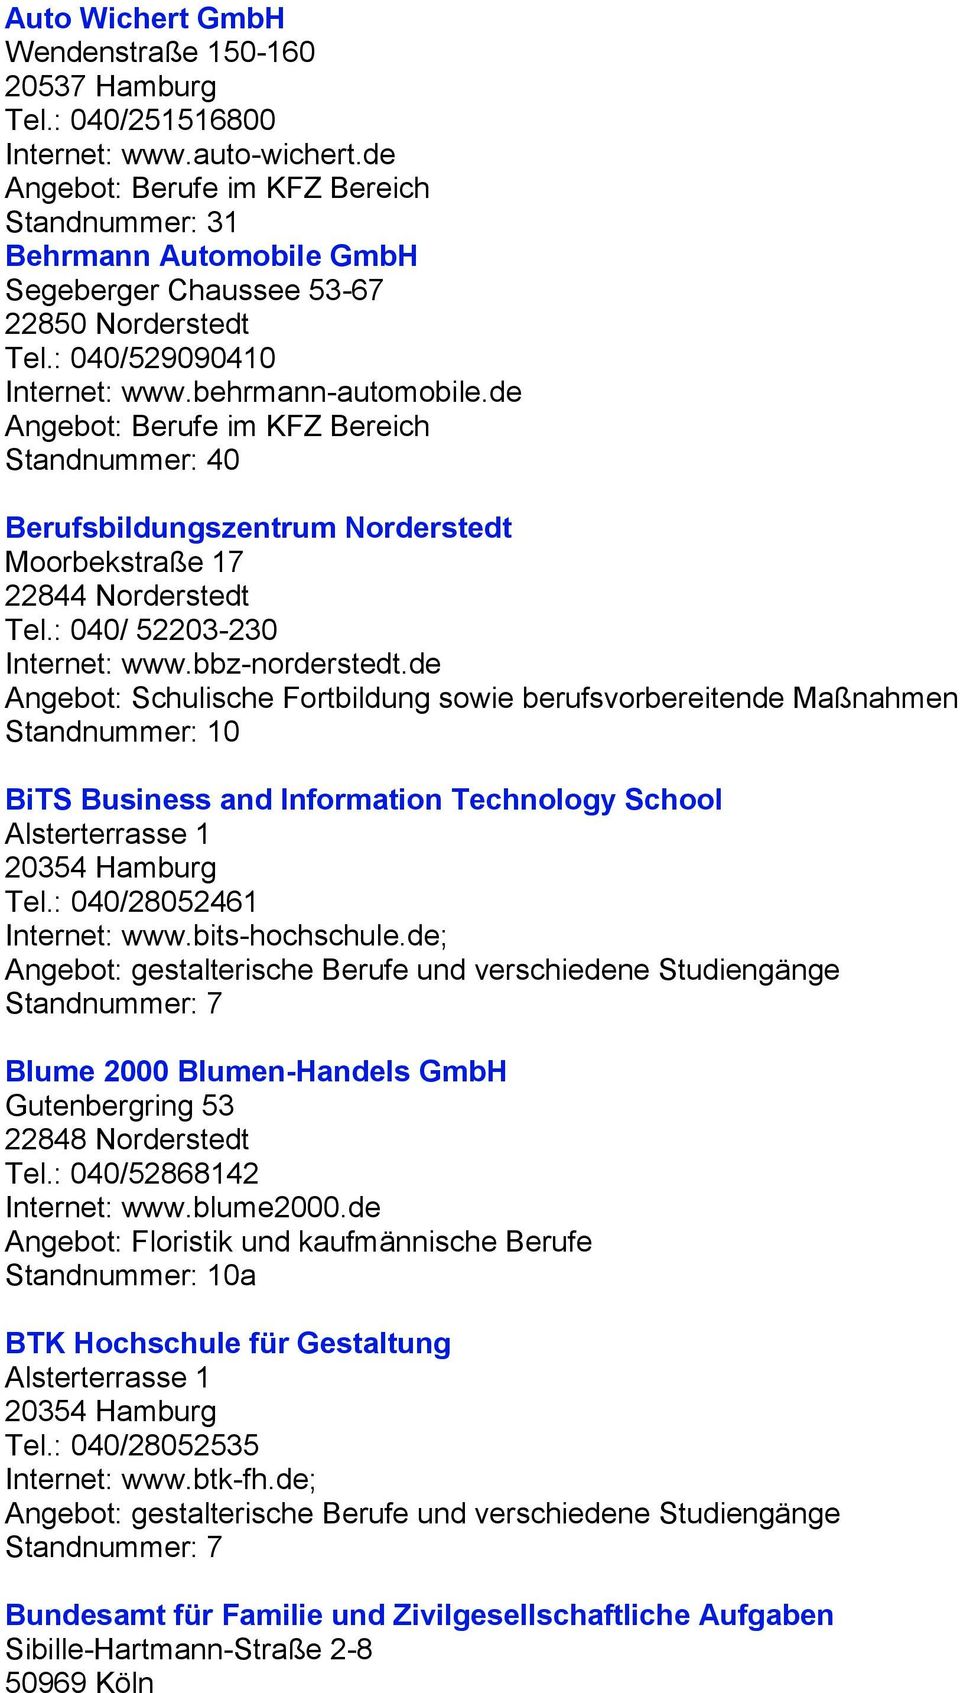 de Angebot: Berufe im KFZ Bereich Standnummer: 40 Berufsbildungszentrum Norderstedt Moorbekstraße 17 22844 Norderstedt Tel.: 040/ 52203-230 Internet: www.bbz-norderstedt.